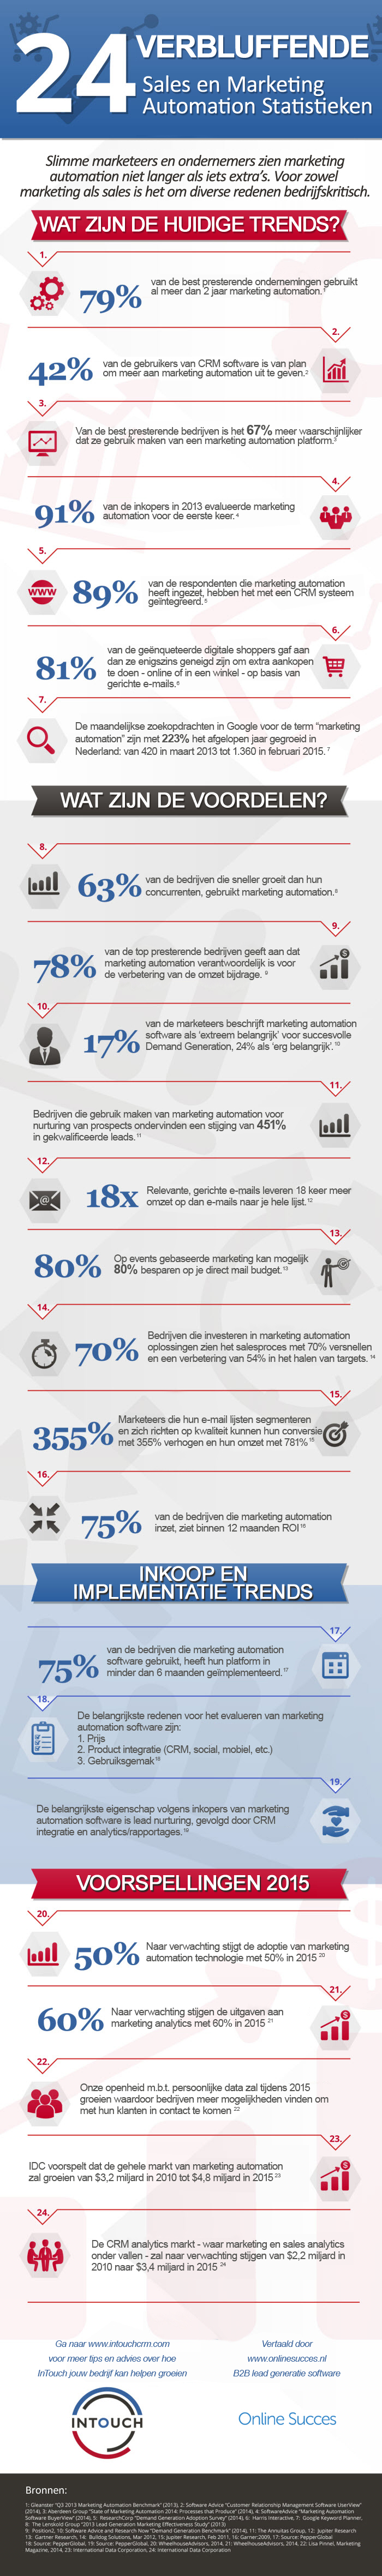 marketing-automation-infographic-24-verbluffende-statistieken-v2